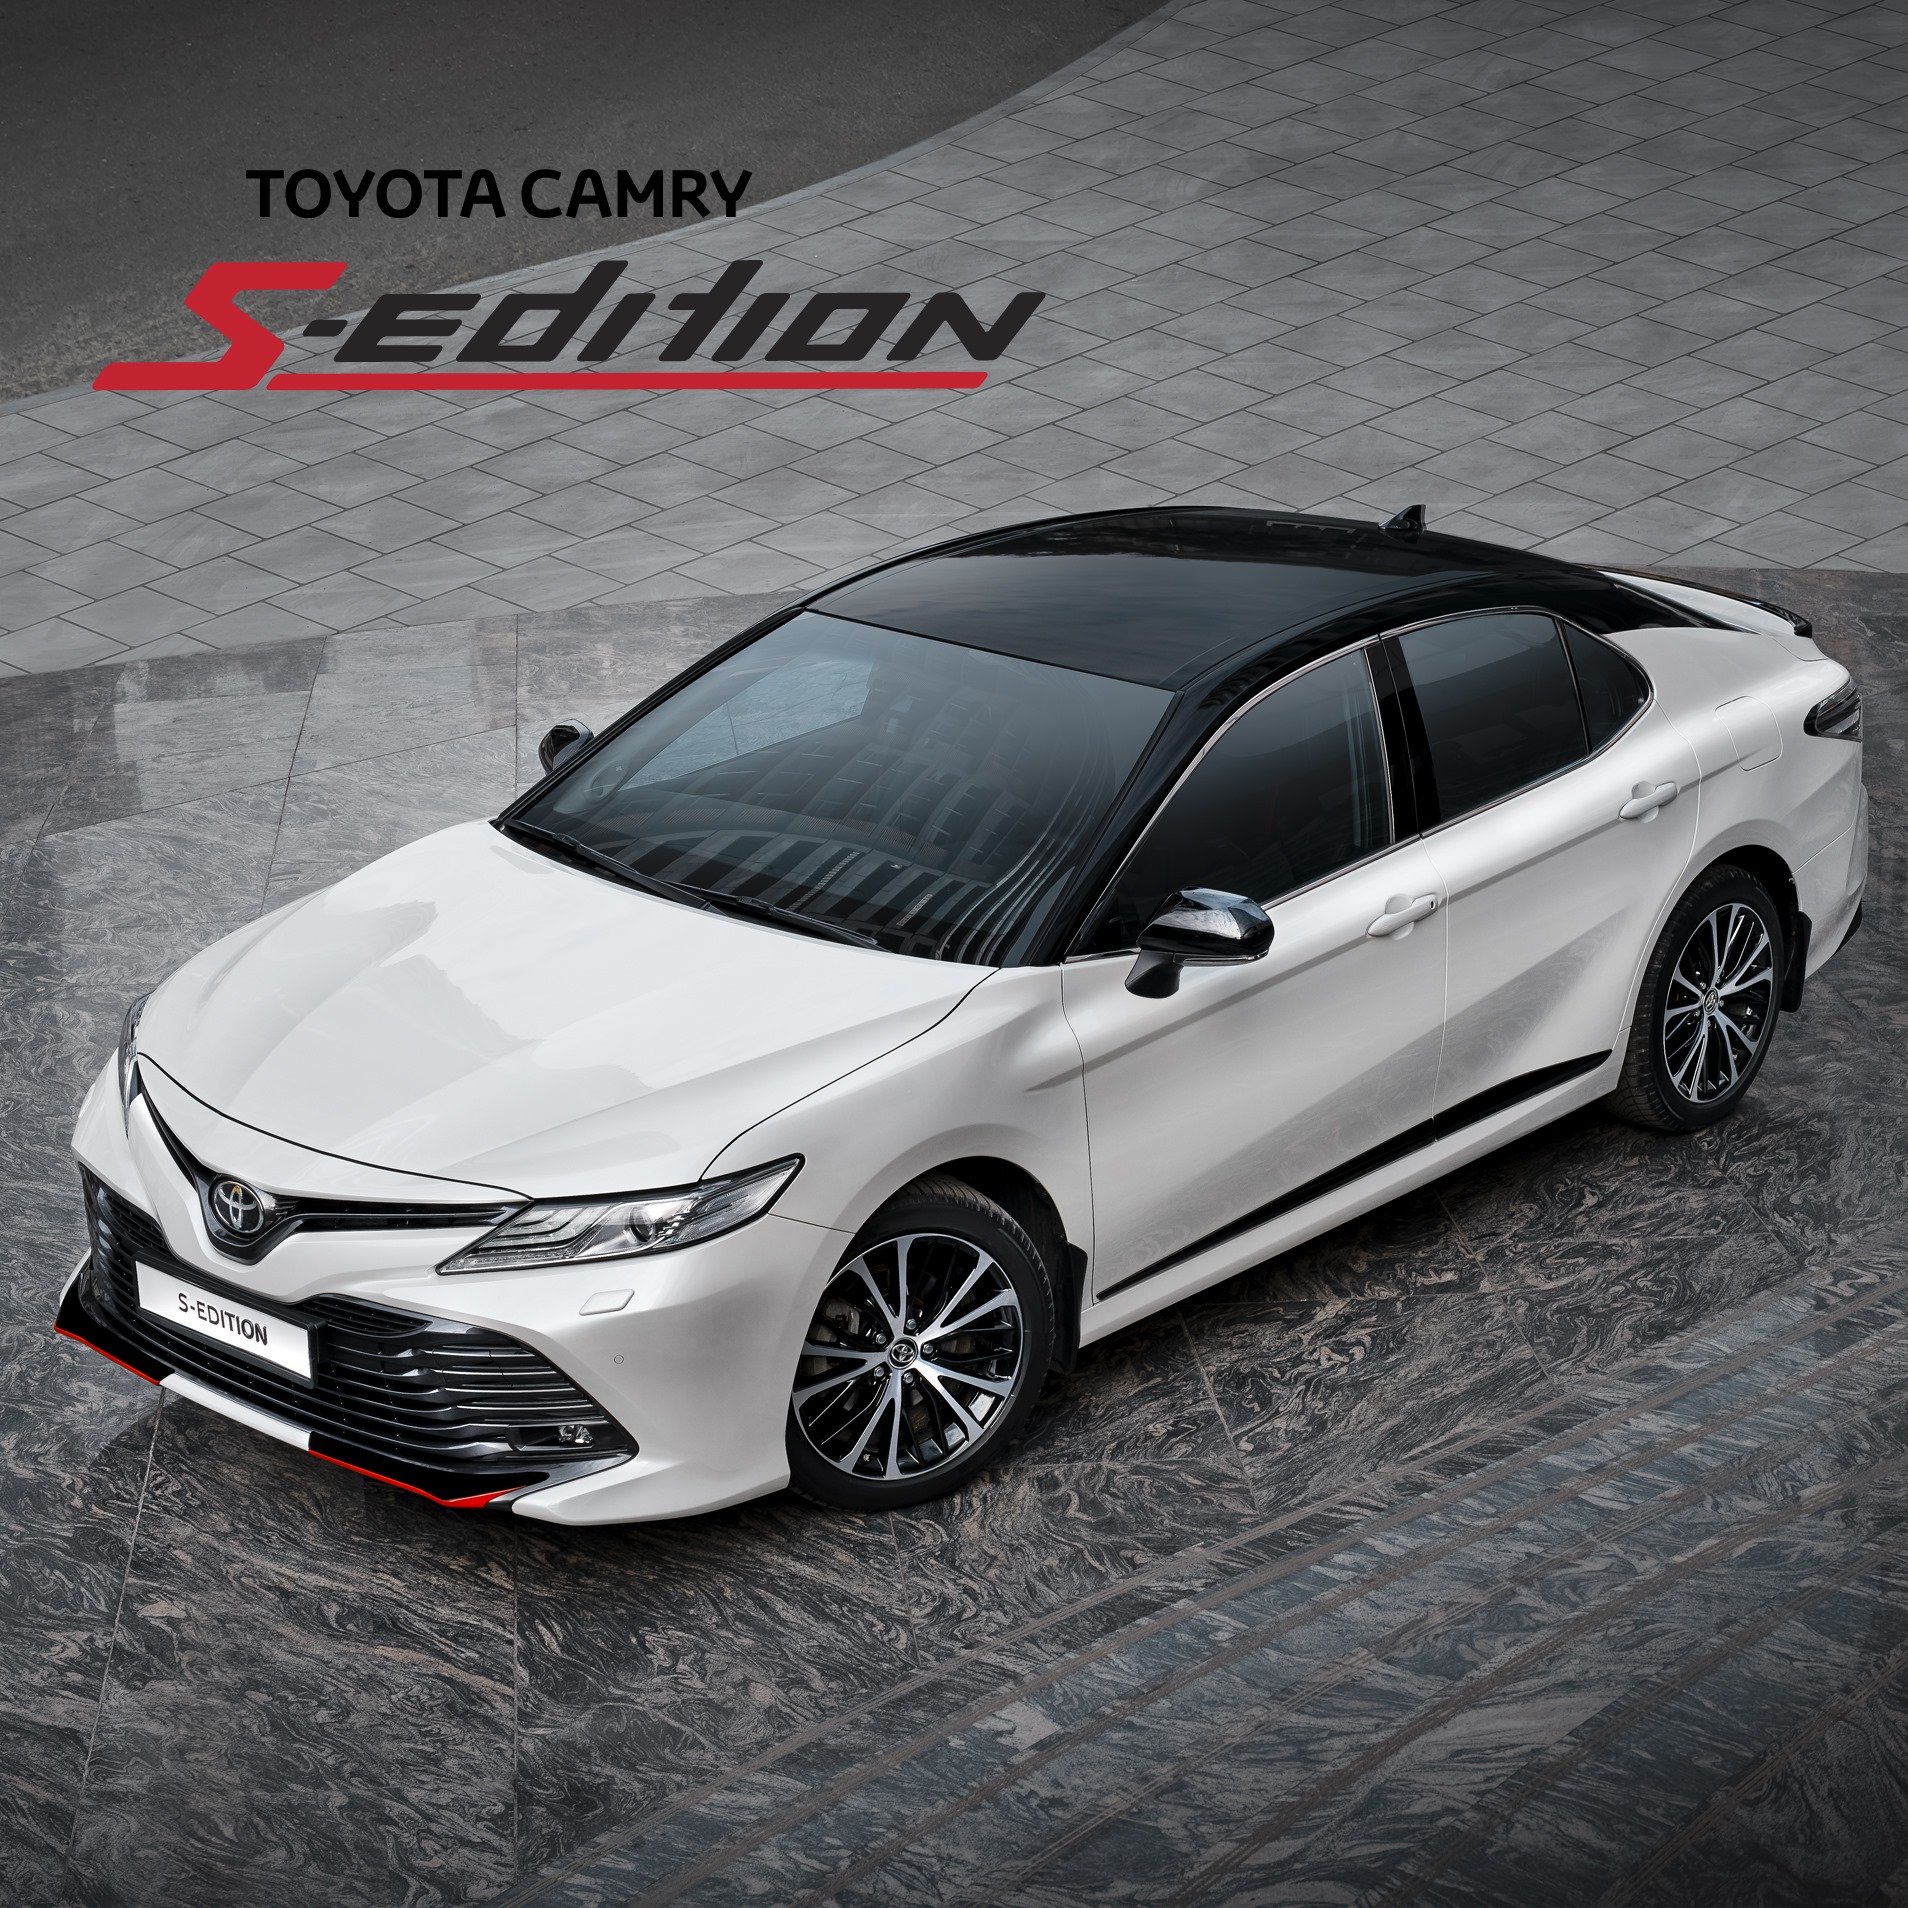 Đánh giá Toyota Camry 2020 TRD về thiết kế nội ngoại thất phiên bản thể  thao đầu tiên  MuasamXecom